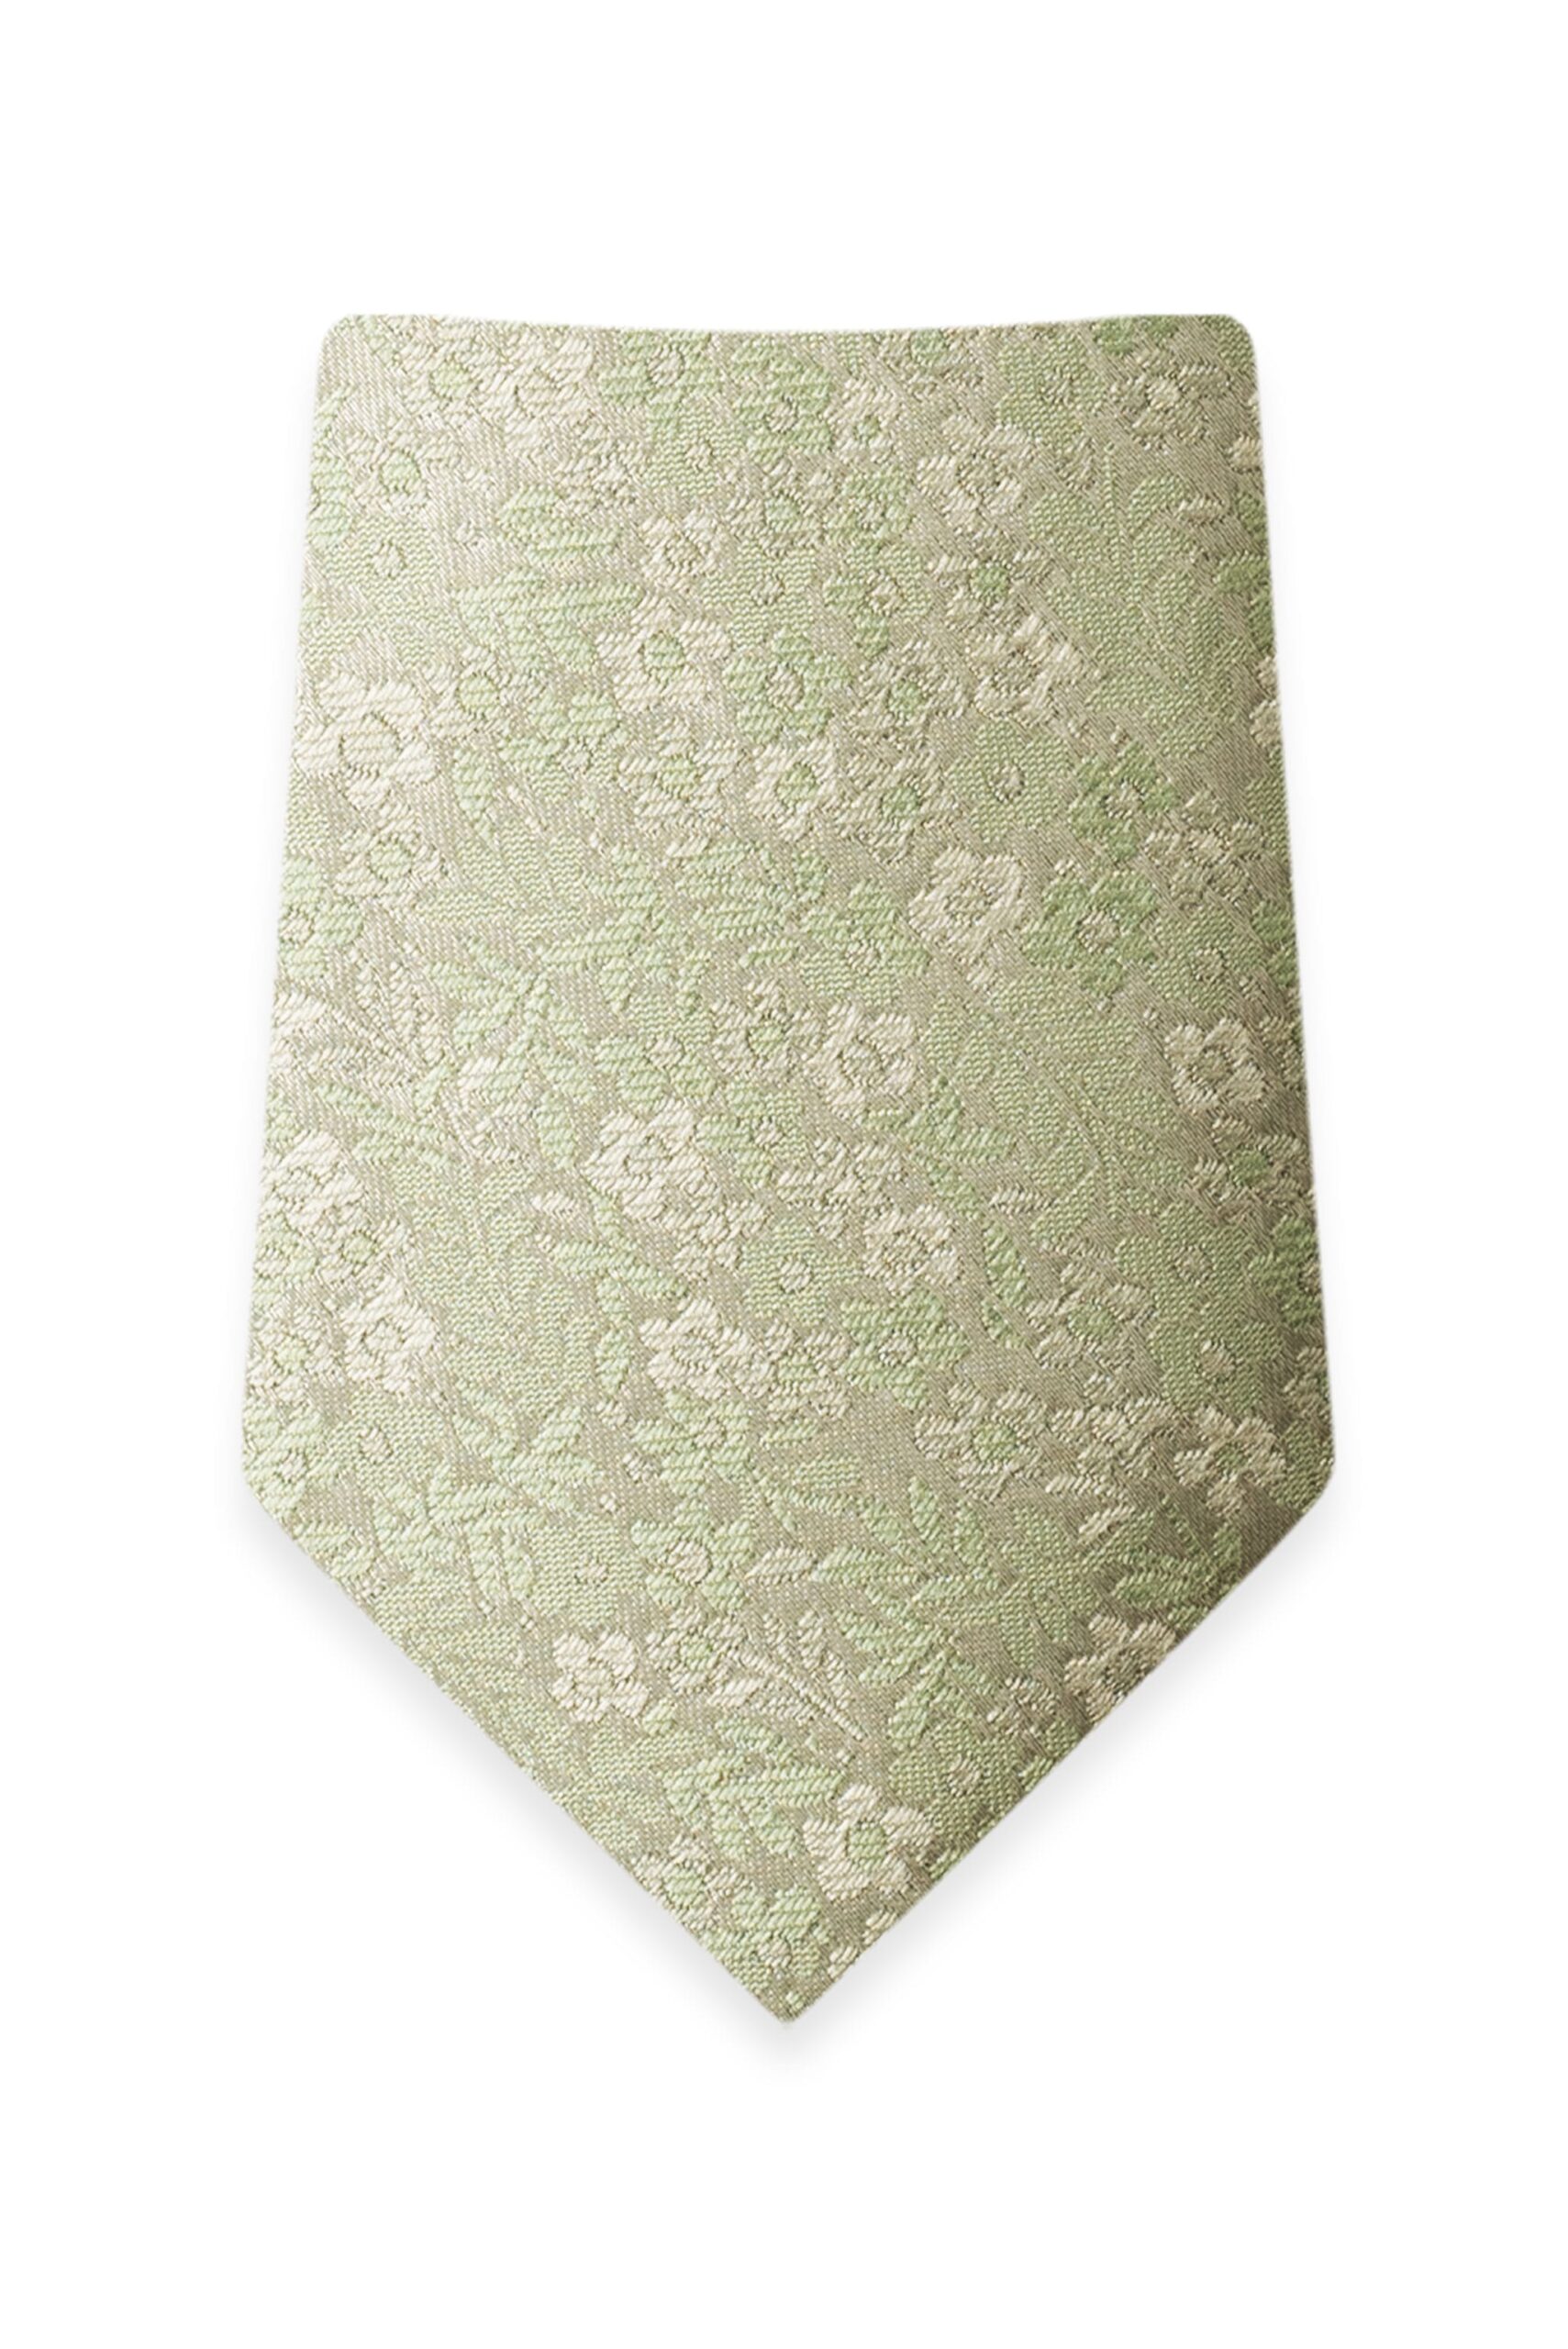 Floral Sage Self-Tie Windsor Tie 1